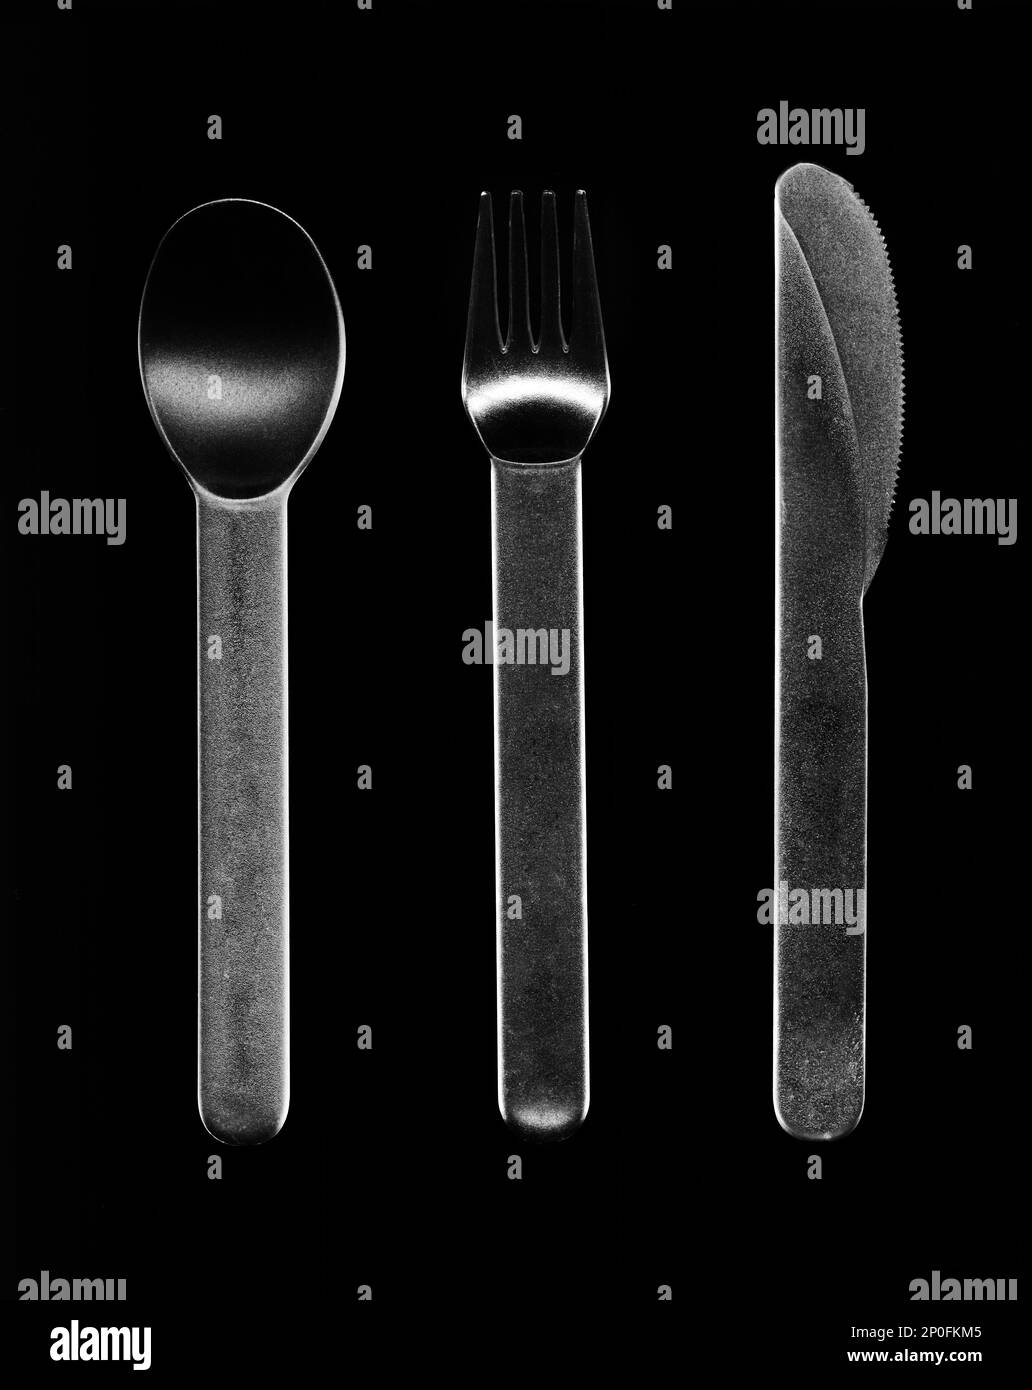 Billig plastik Besteck auf Schwarz isoliert. Verfügbare klare Besteck - Messer, Löffel und Gabel in einer Reihe angeordnet. Besteck Stockfoto